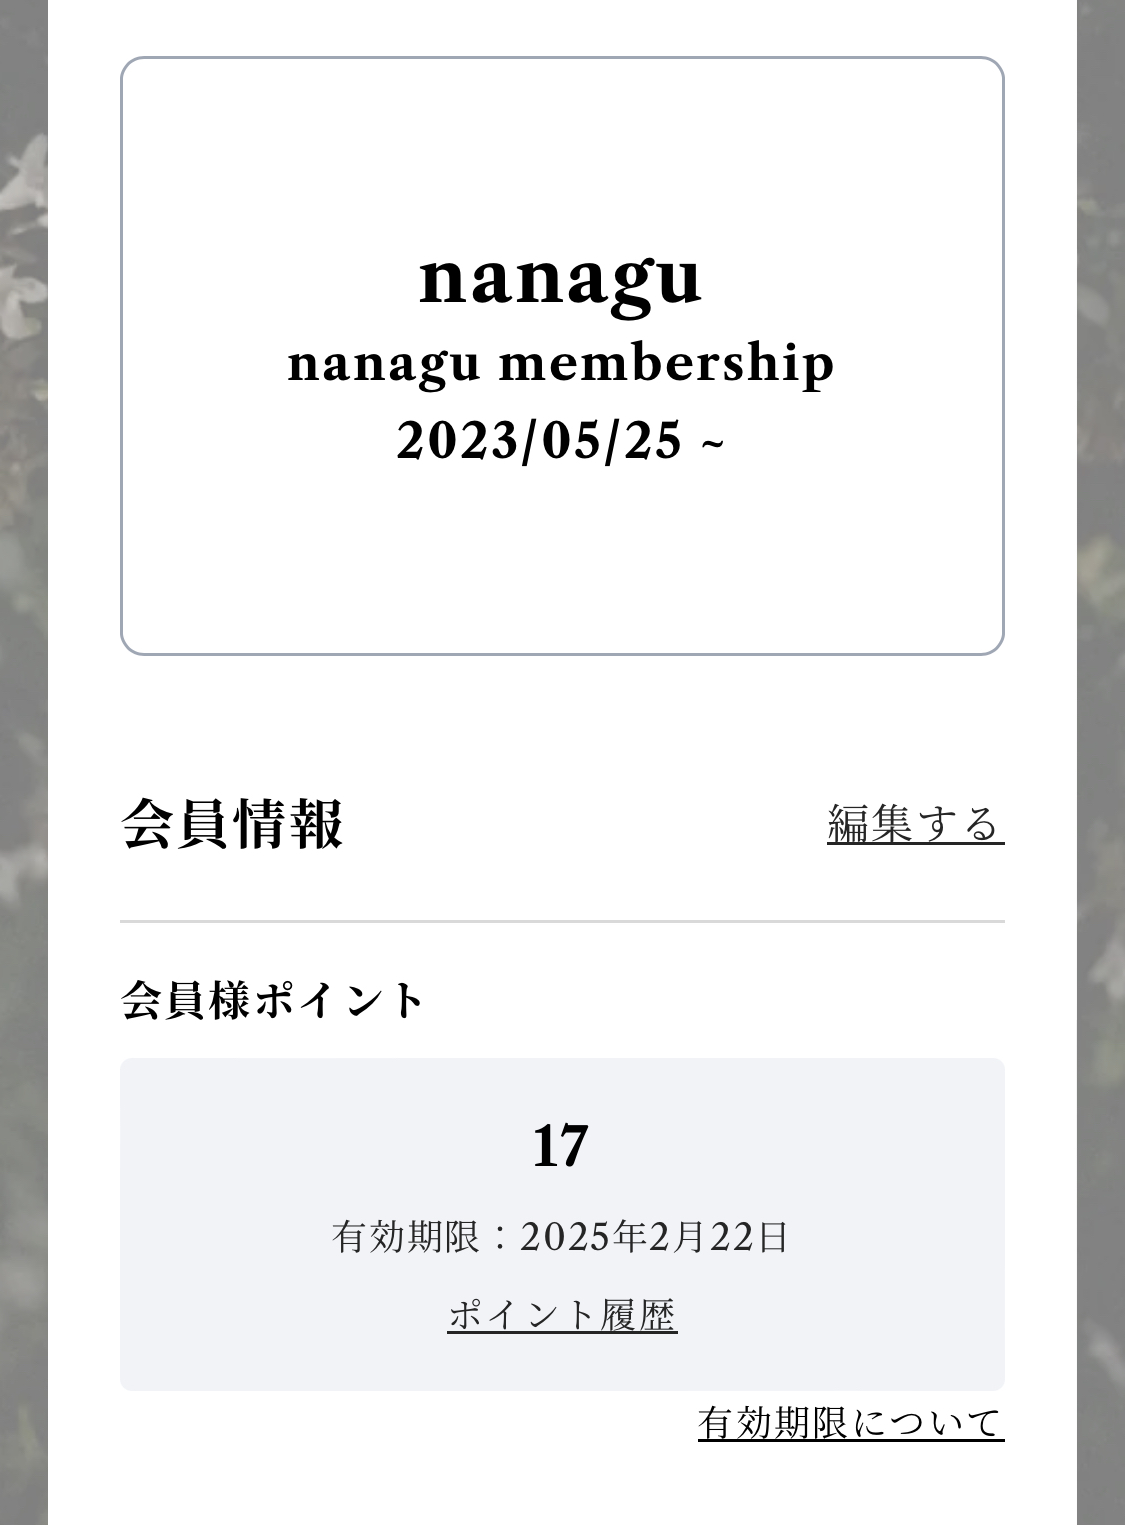 2023.09.27 　nanagu membership point system